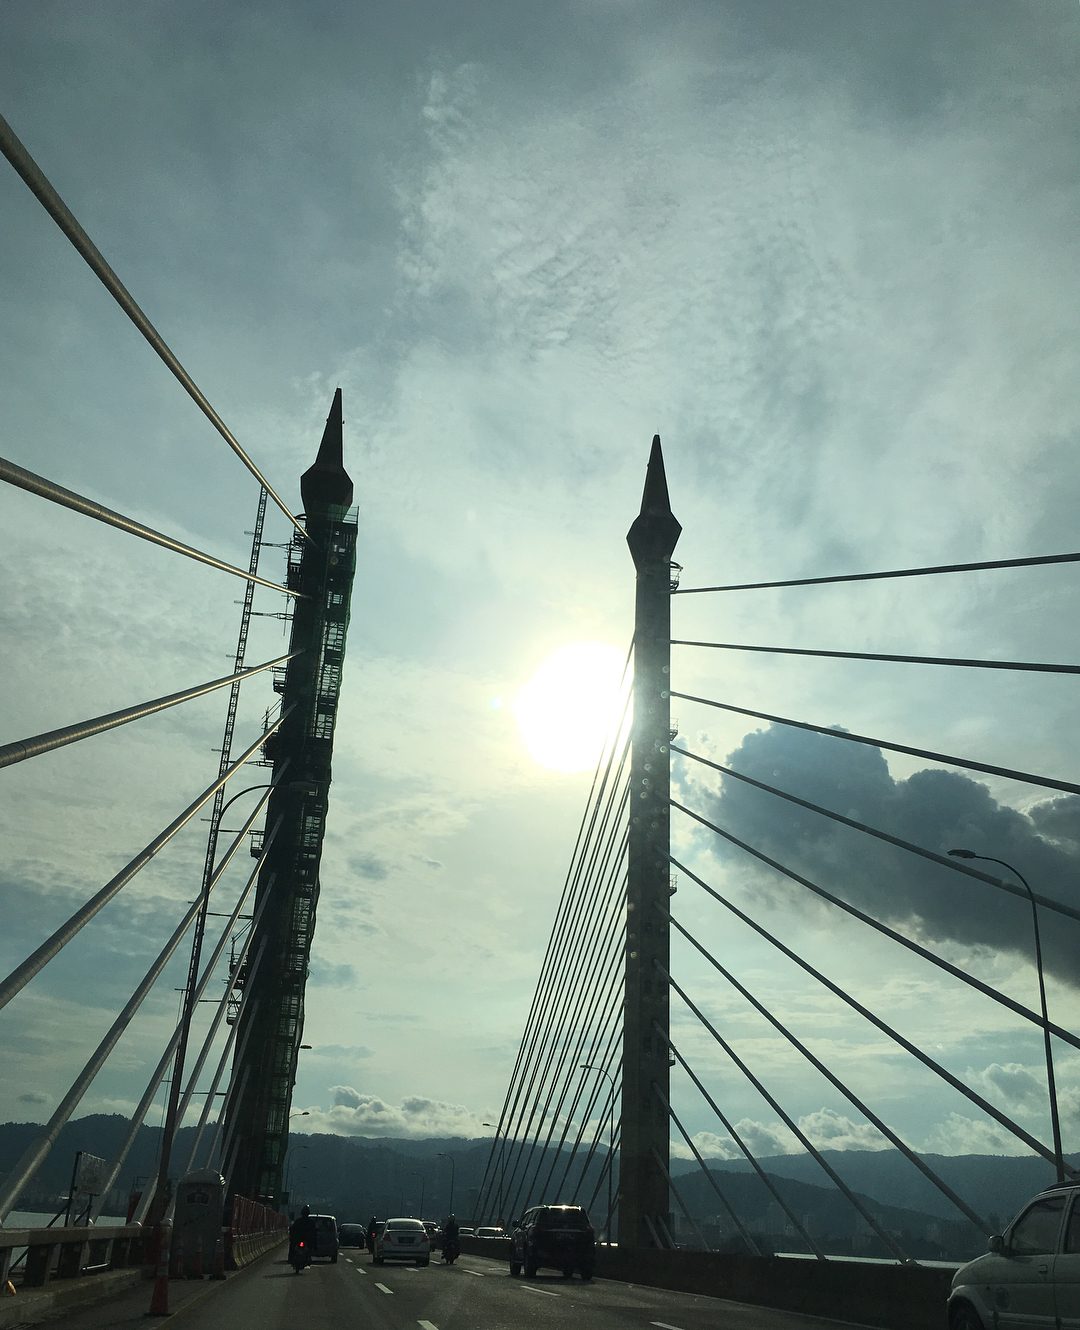 Penang Bridge Sky View by Joycy Lim